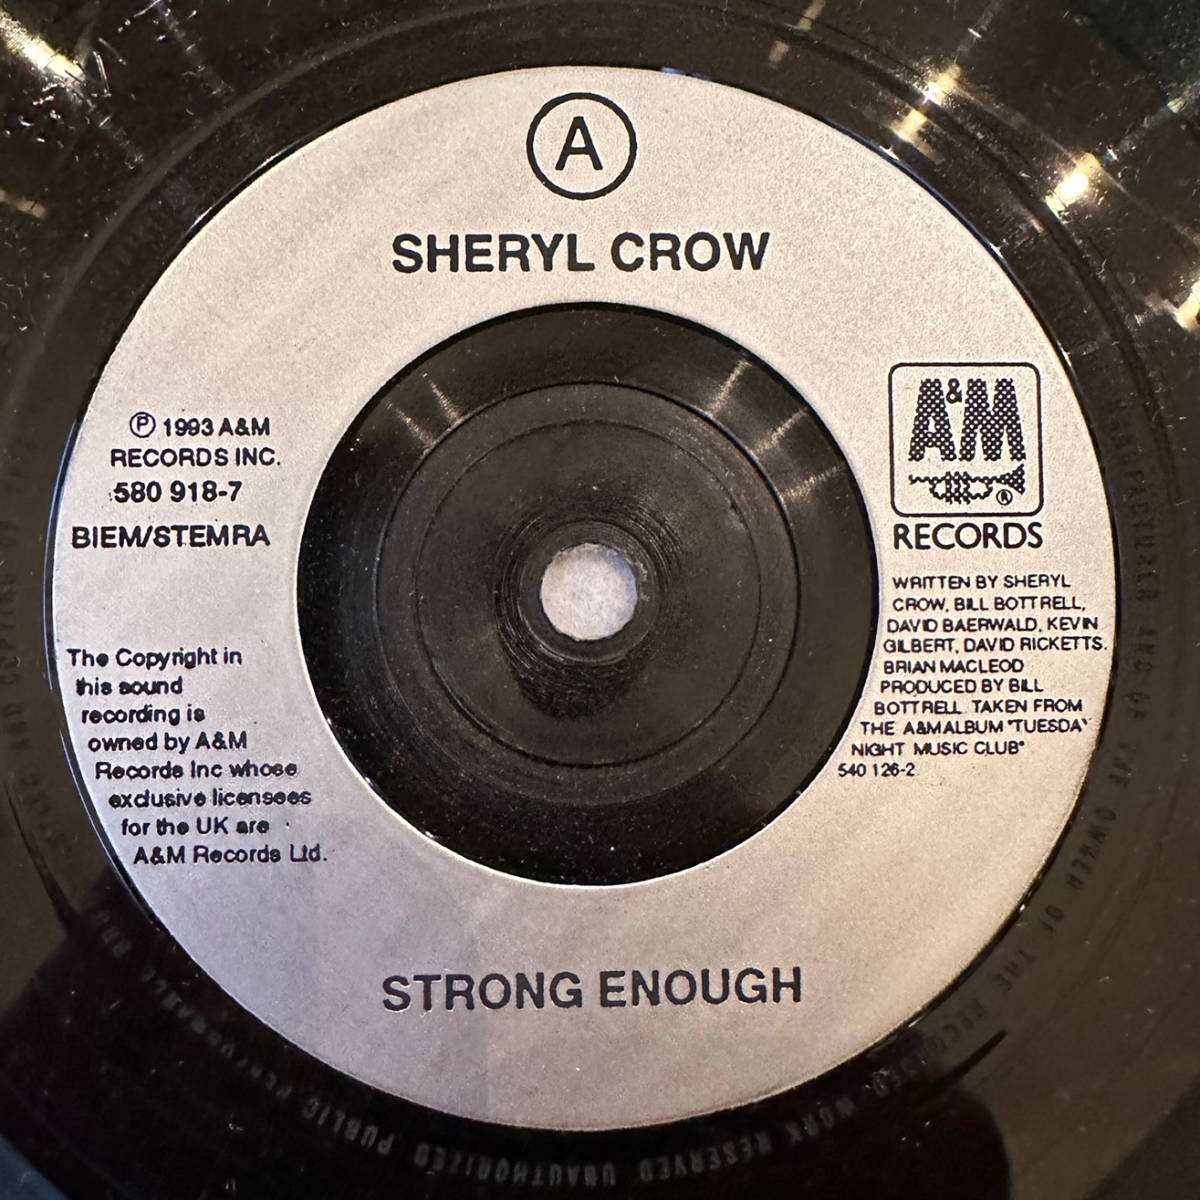 ■1995年 UK盤 オリジナル Sheryl Crow - Strong Enough 7”EP 580 918-7 A&M Records_画像3